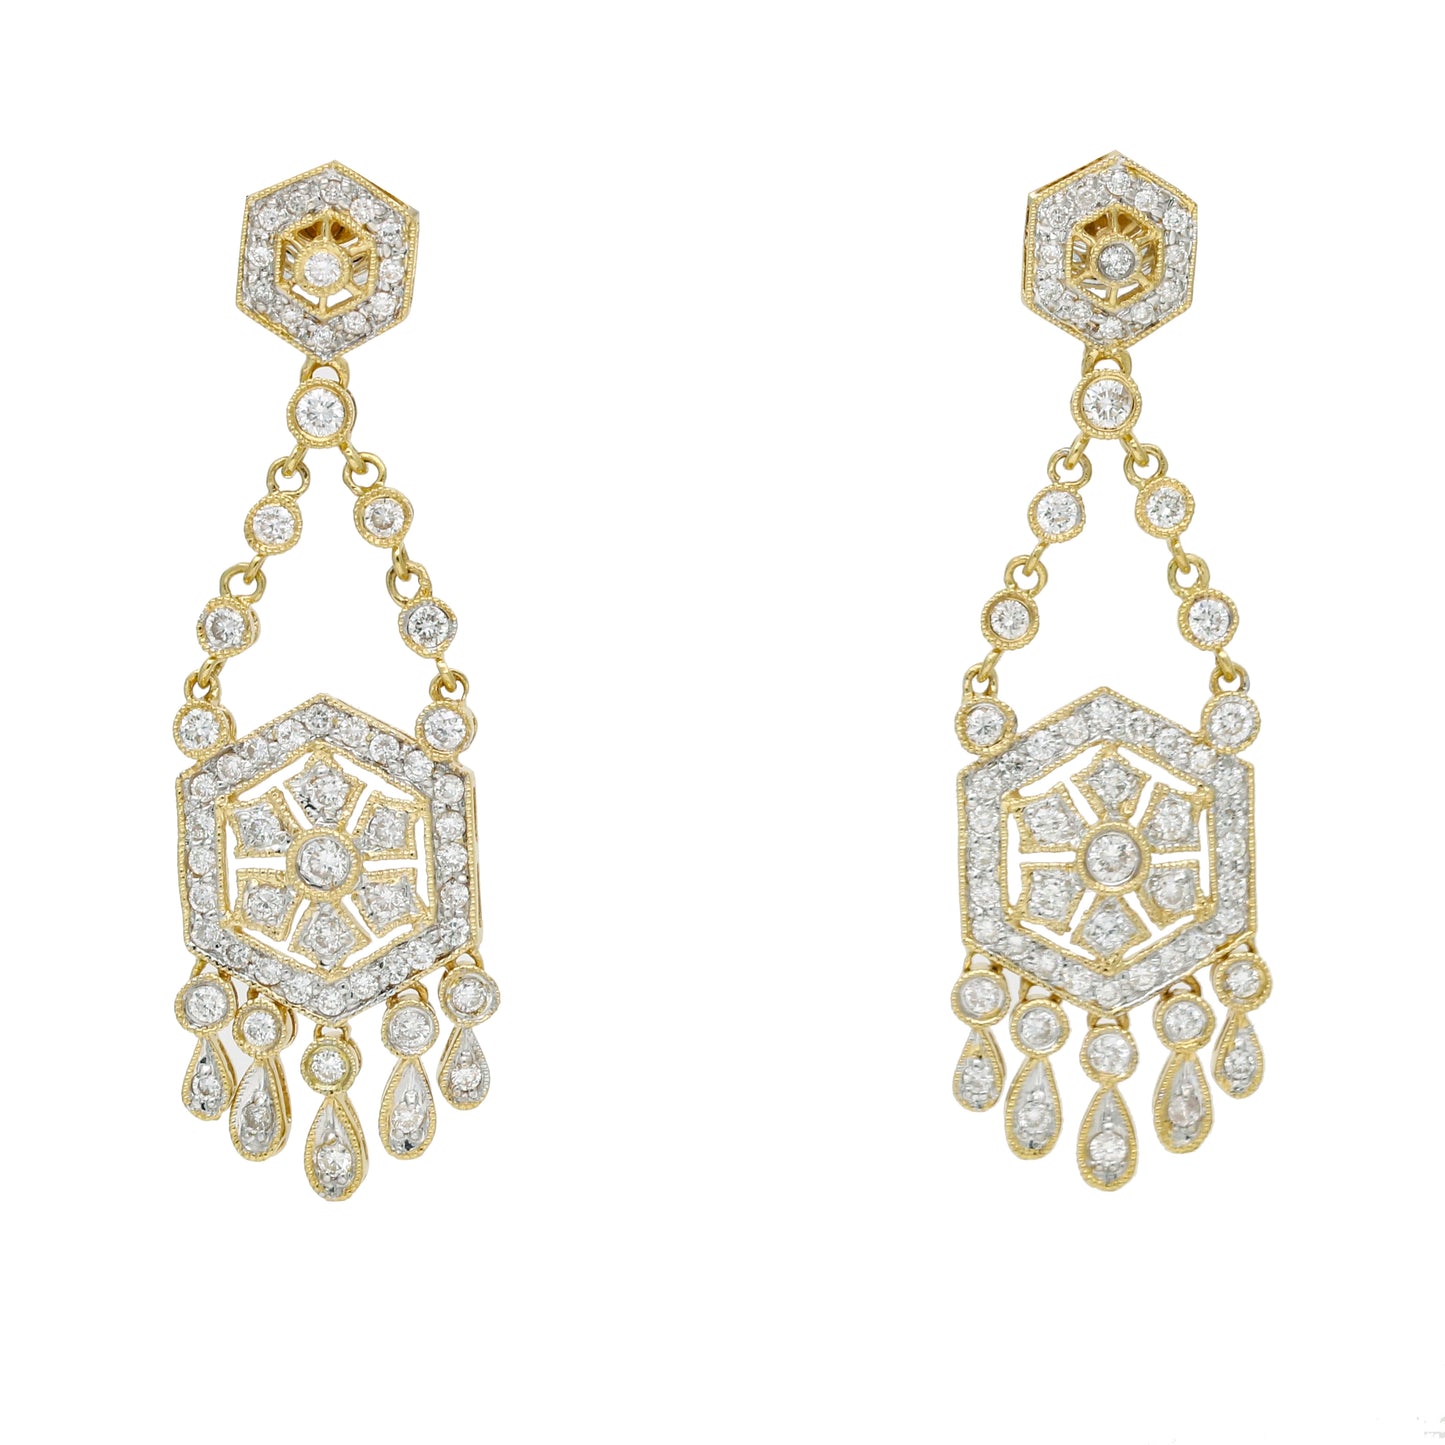 Women's Chandelier Dangle Art Deco Style Earrings with Diamonds in 18k Yellow Gold